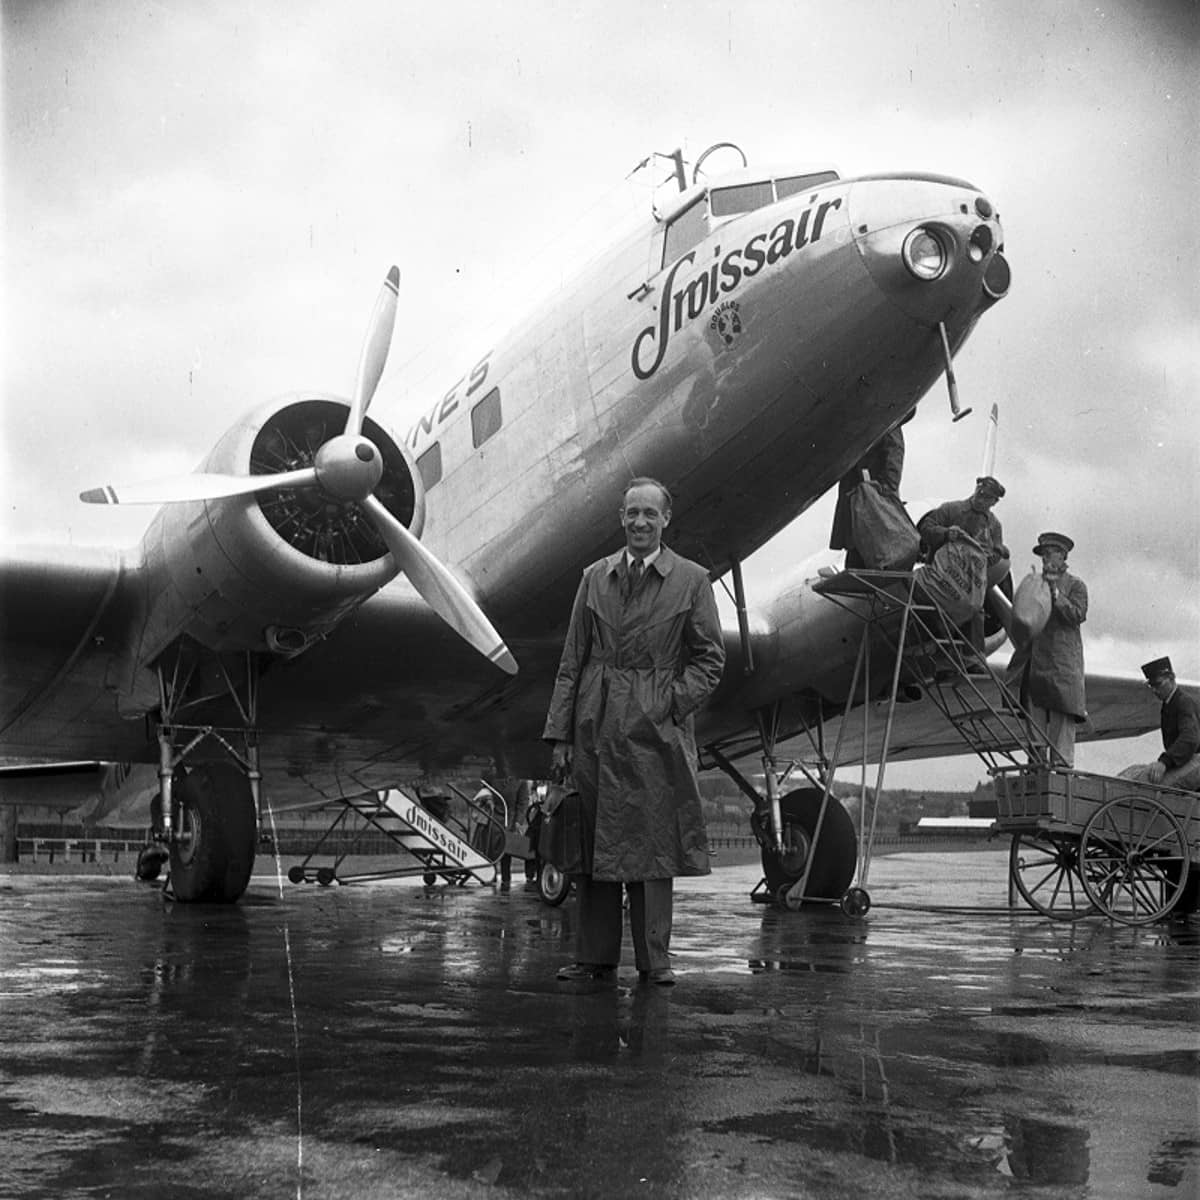 Mann steht vor einem Flugzeug 1947